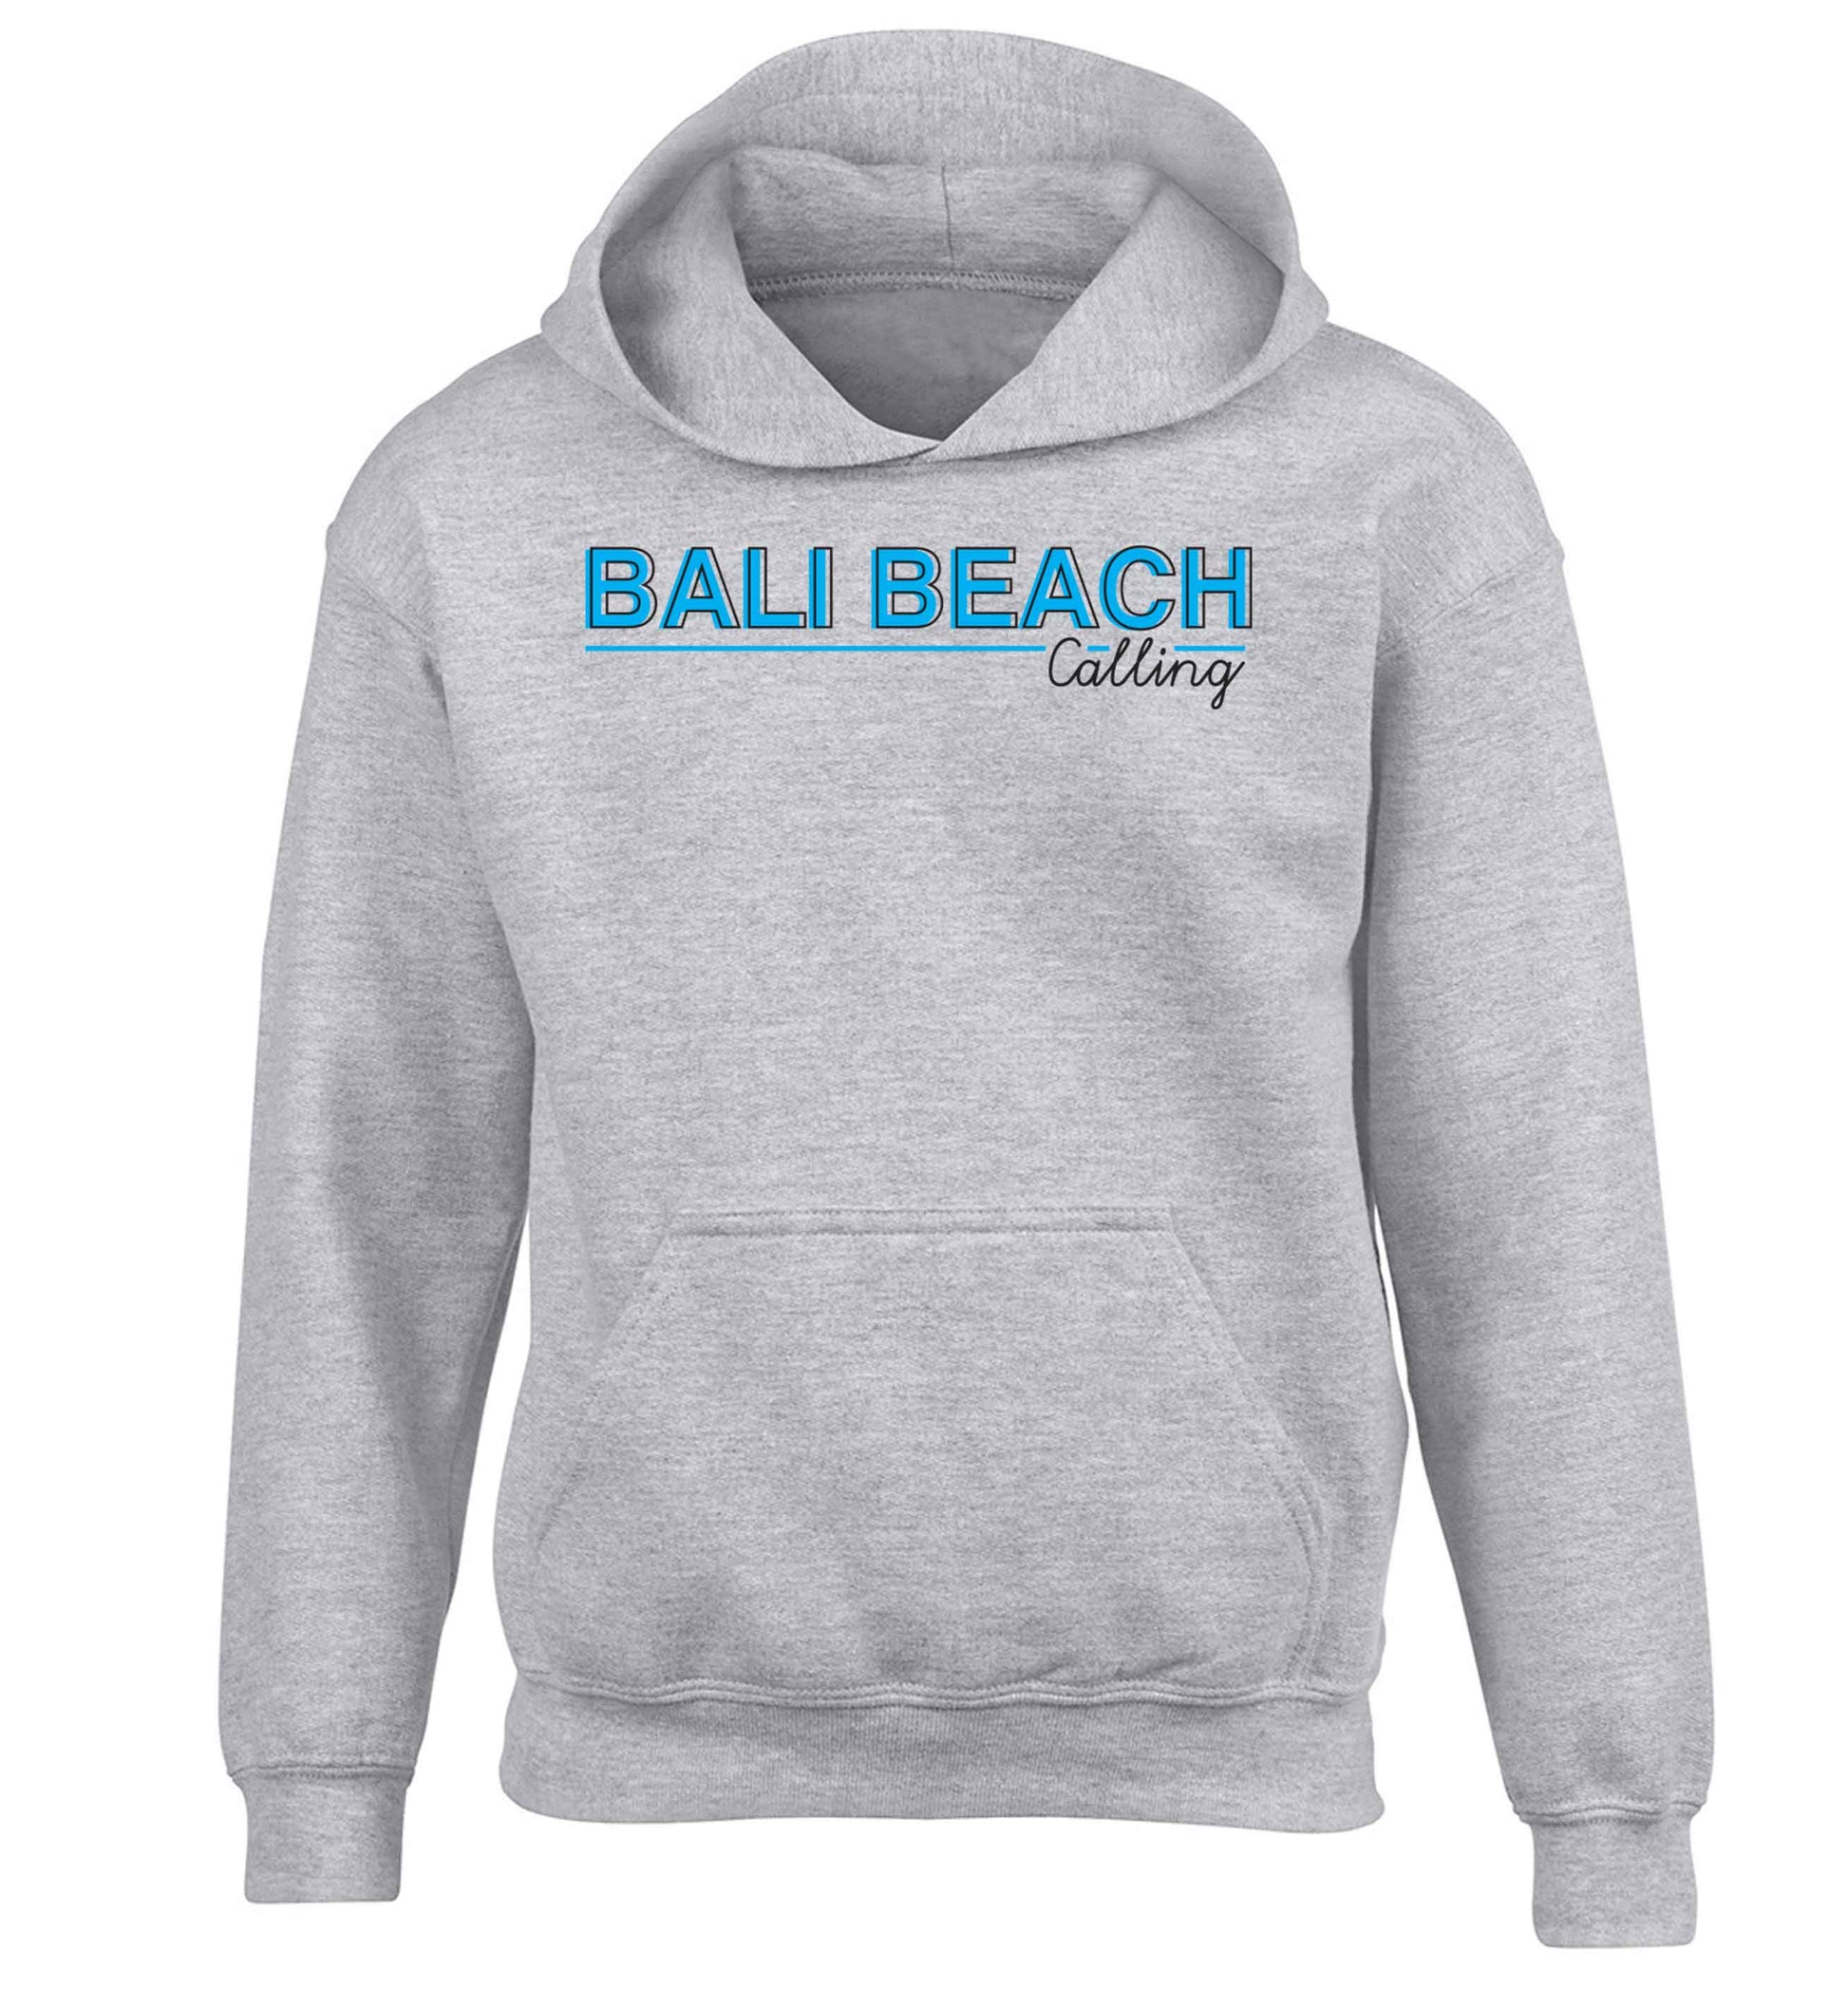 Bali beach calling children's grey hoodie 12-13 Years